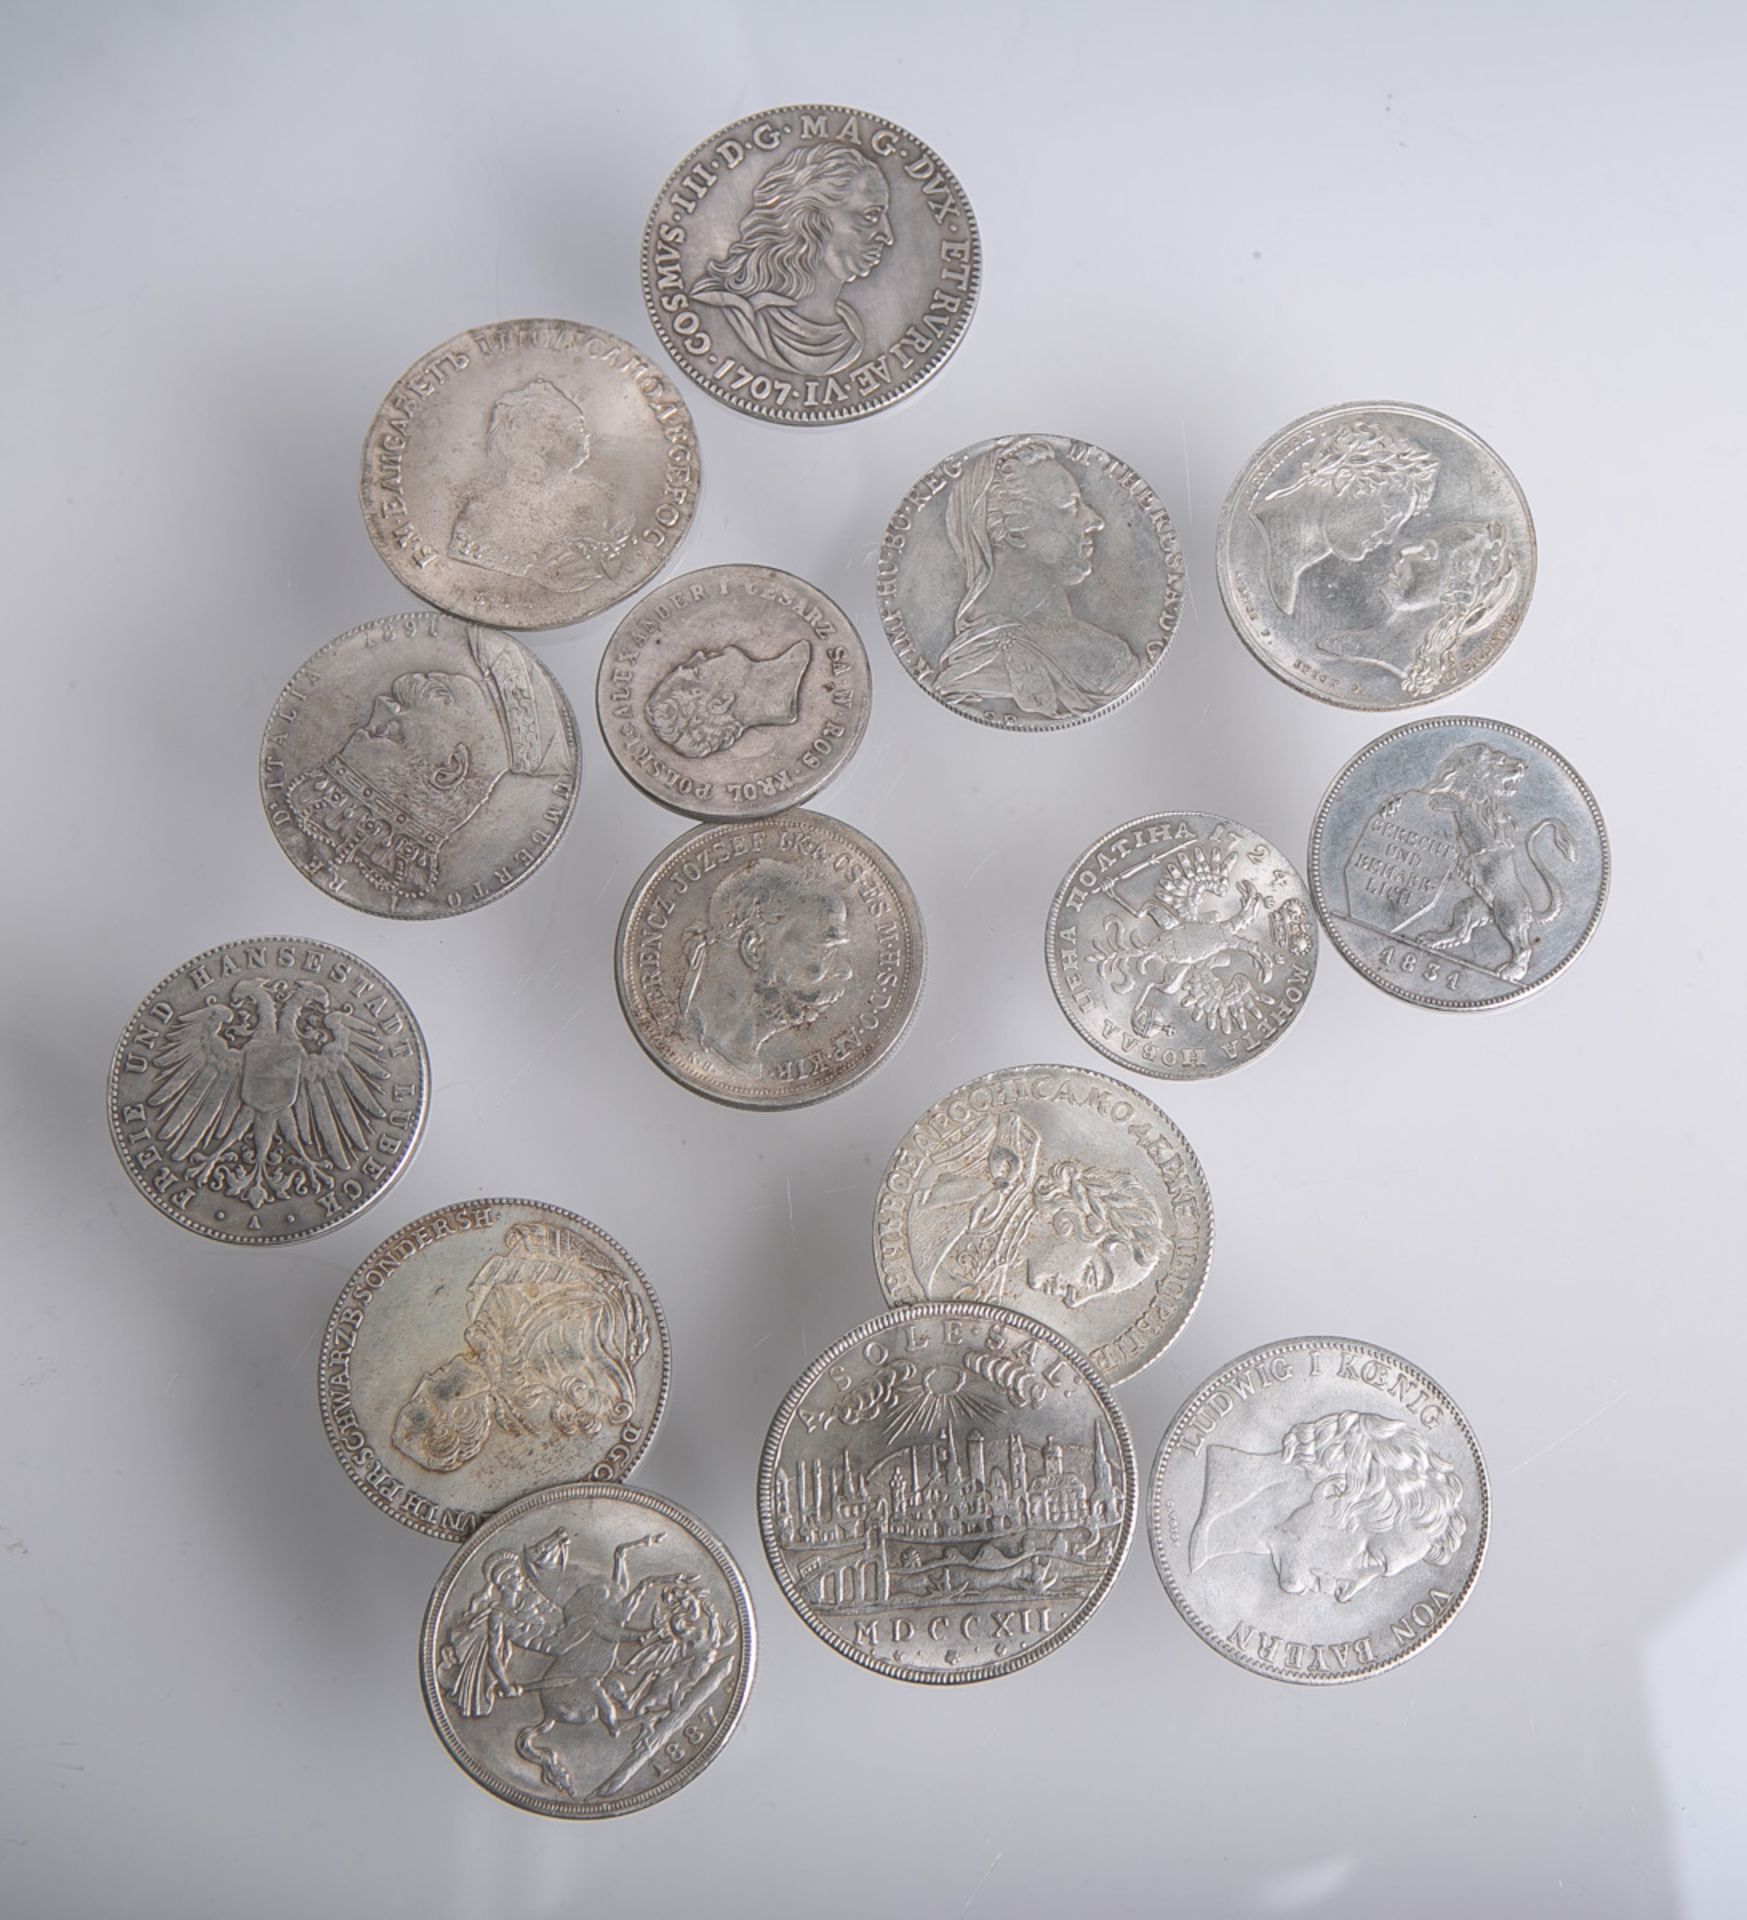 Konvolut von 15 Münzen (18.-19. Jh.)